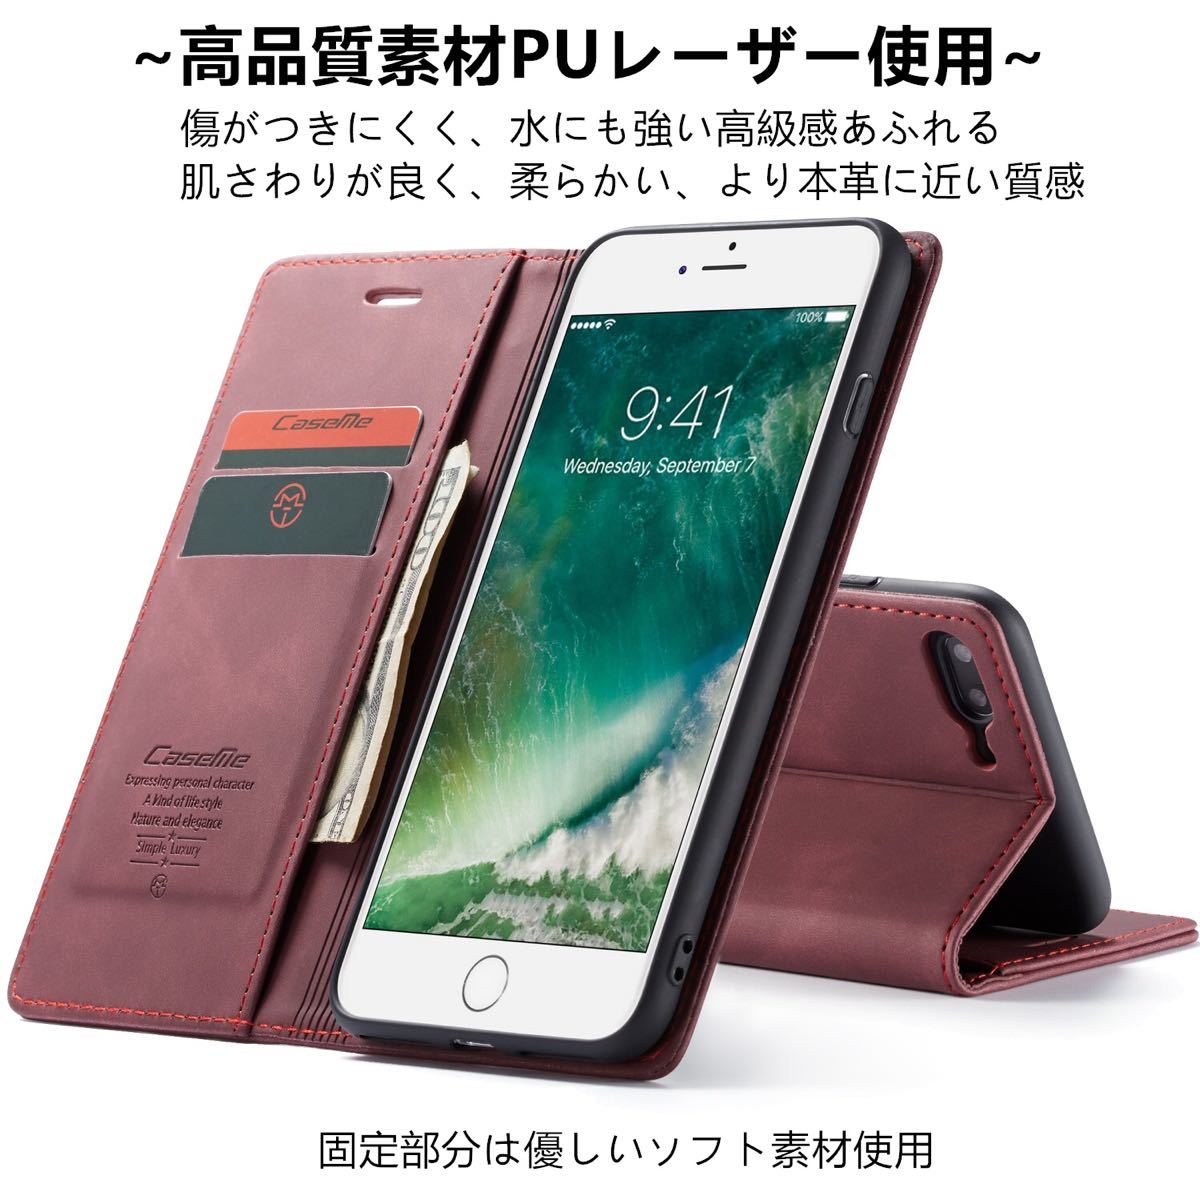 【即日発送】iPhone7plus/8plus 専用手帳型ケース【送料無料】 レザー 手帳型